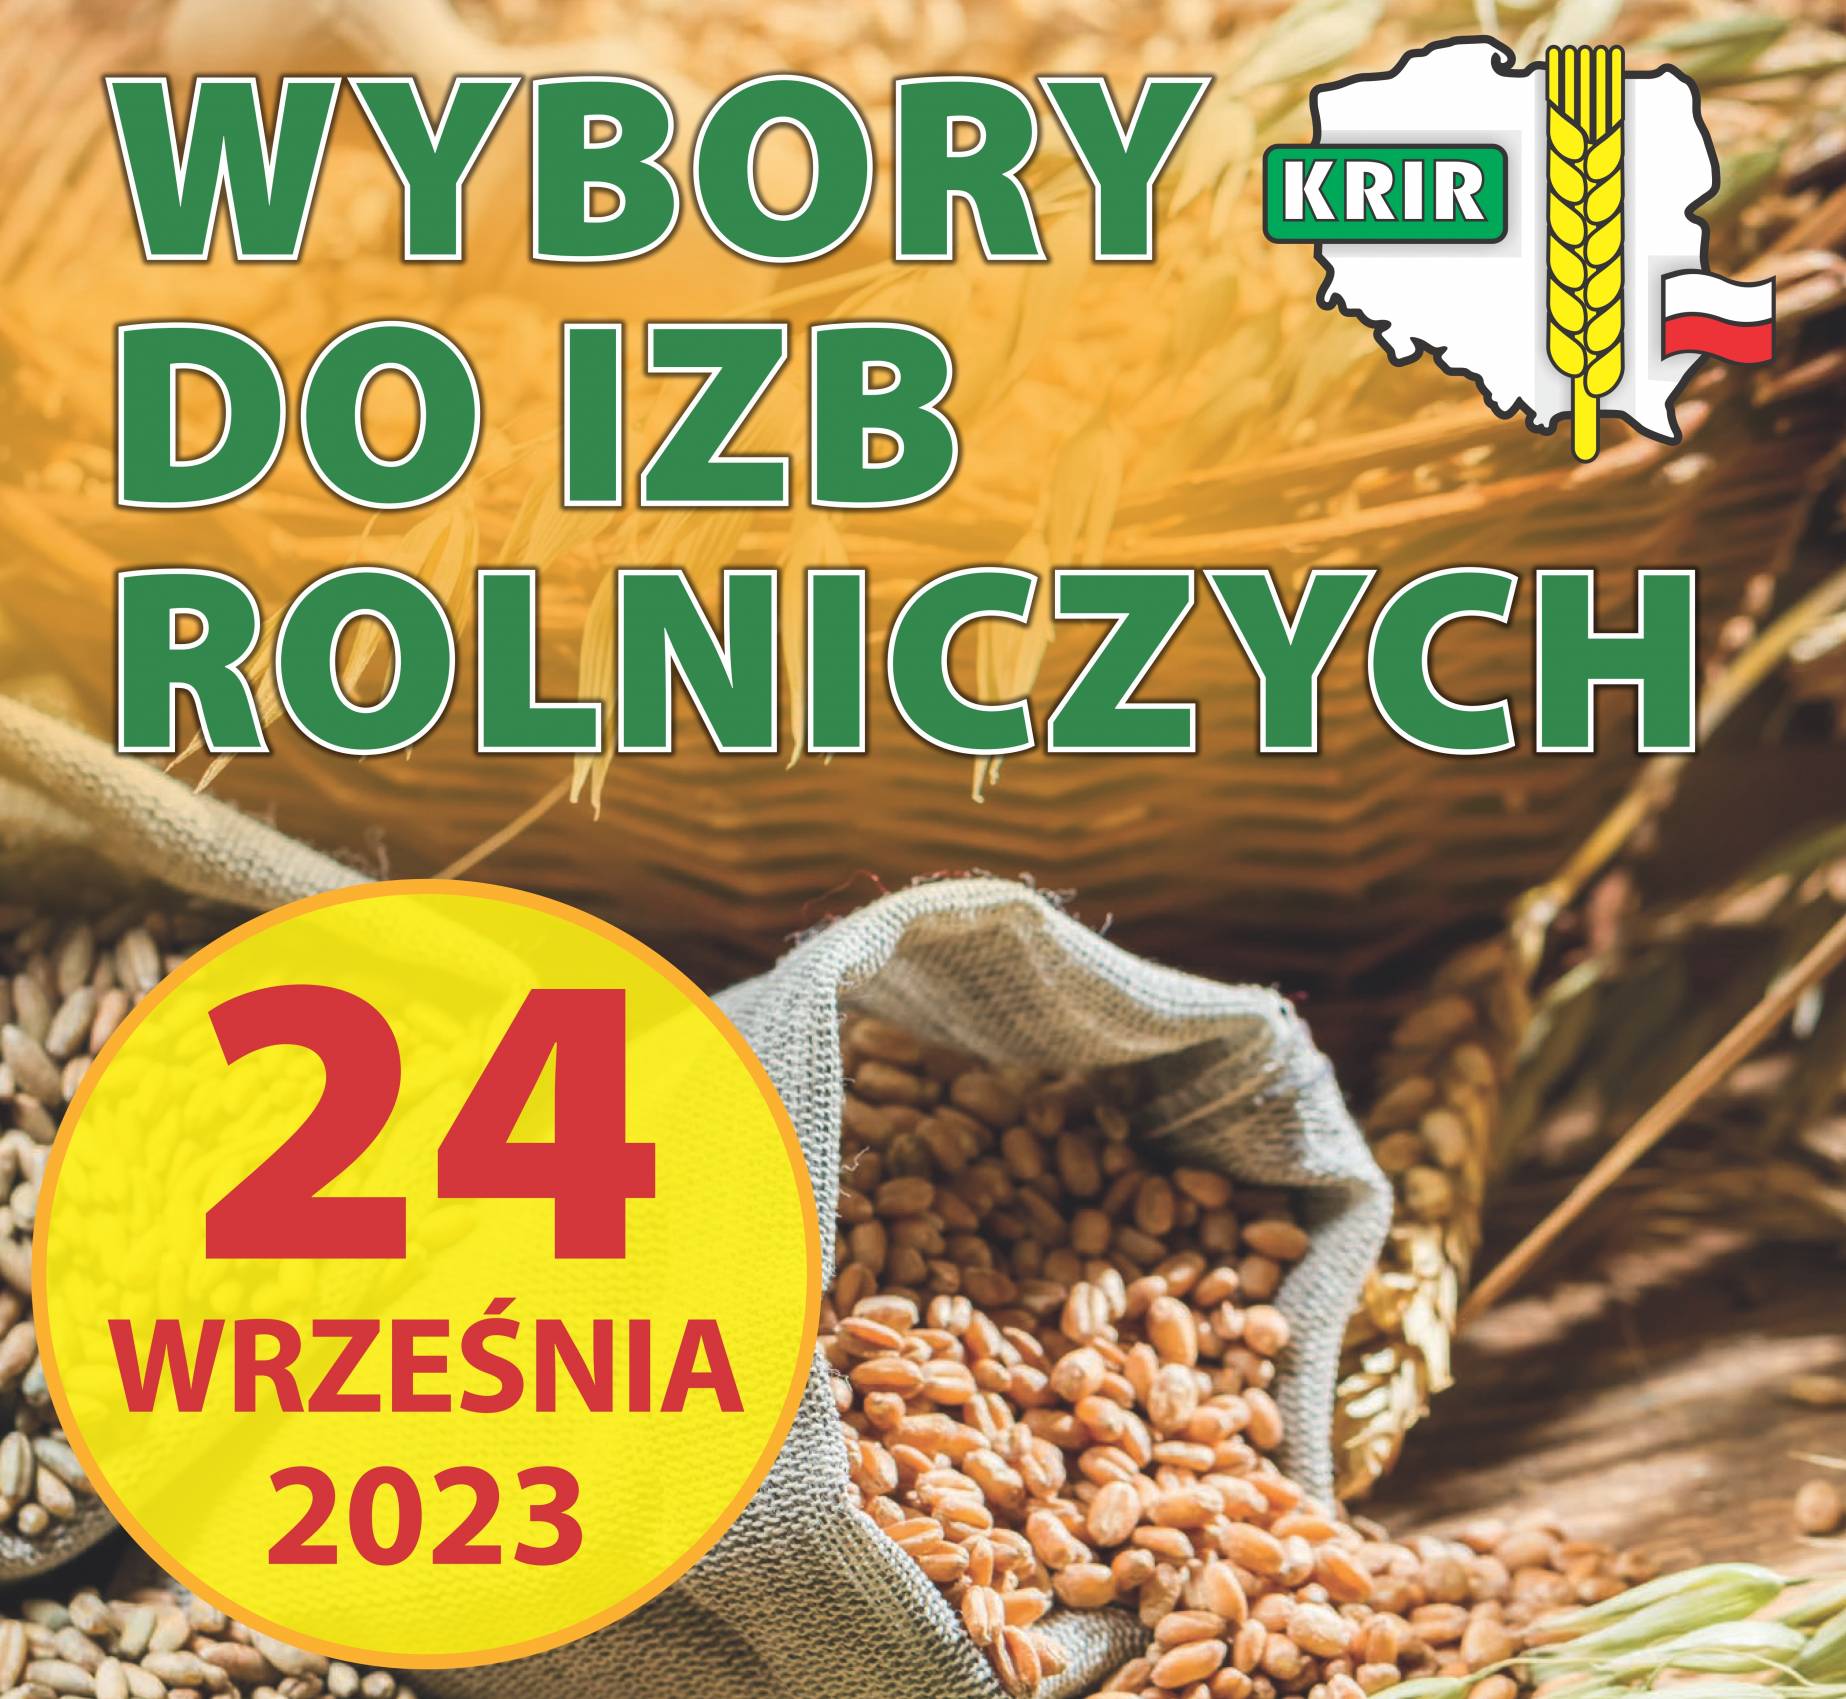 WYBORY DO IZB ROLNICZYCH - 24 WRZEŚNIA 2023 ROKU